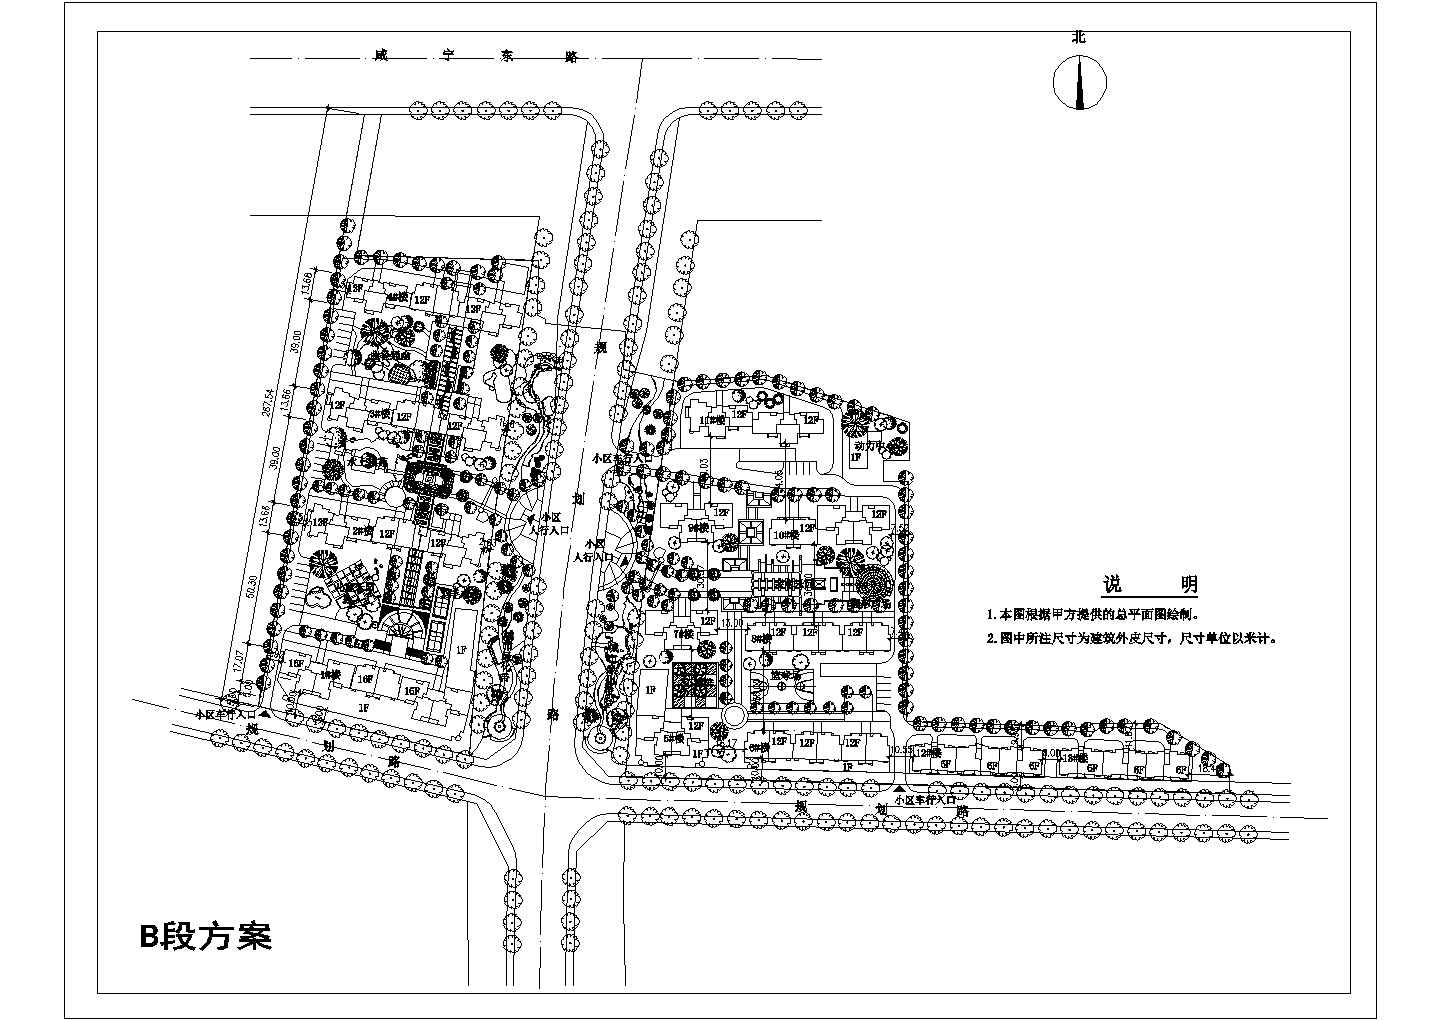 【上海】某地大型小区建筑设计方案总图